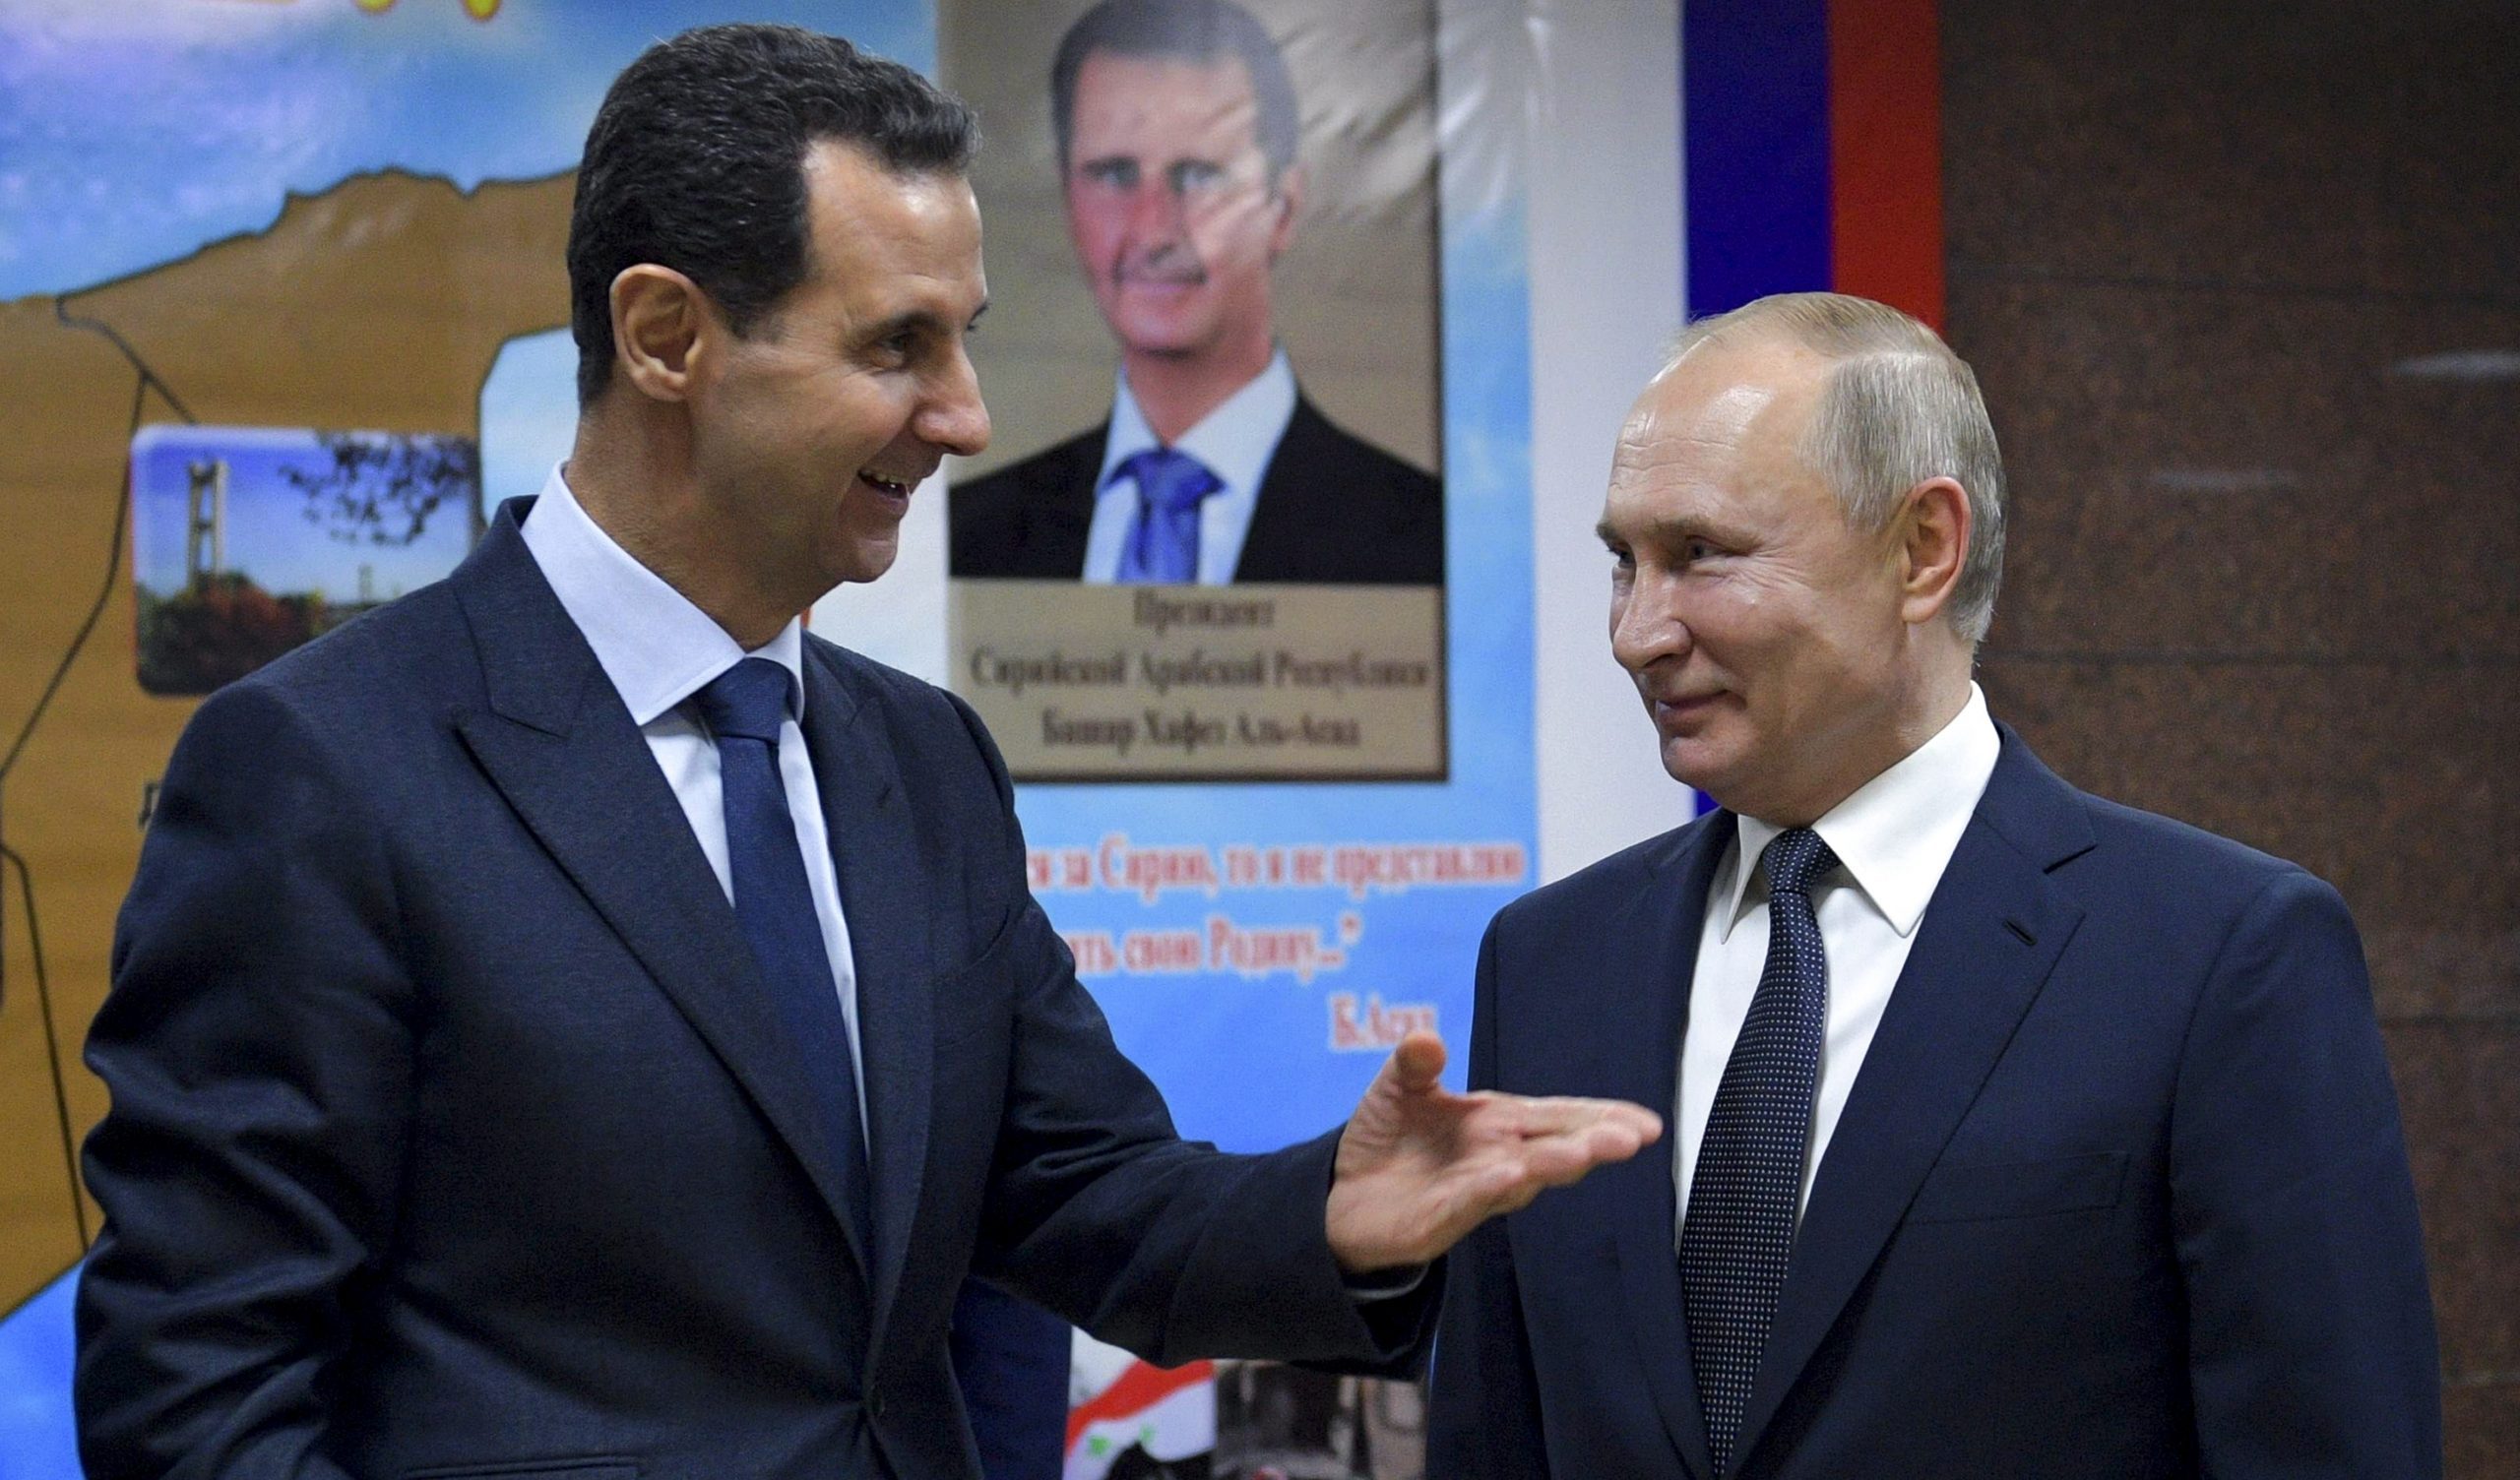 La Lega Araba riammette "macellaio" Assad: come se dodici anni di guerra non fossero esistiti